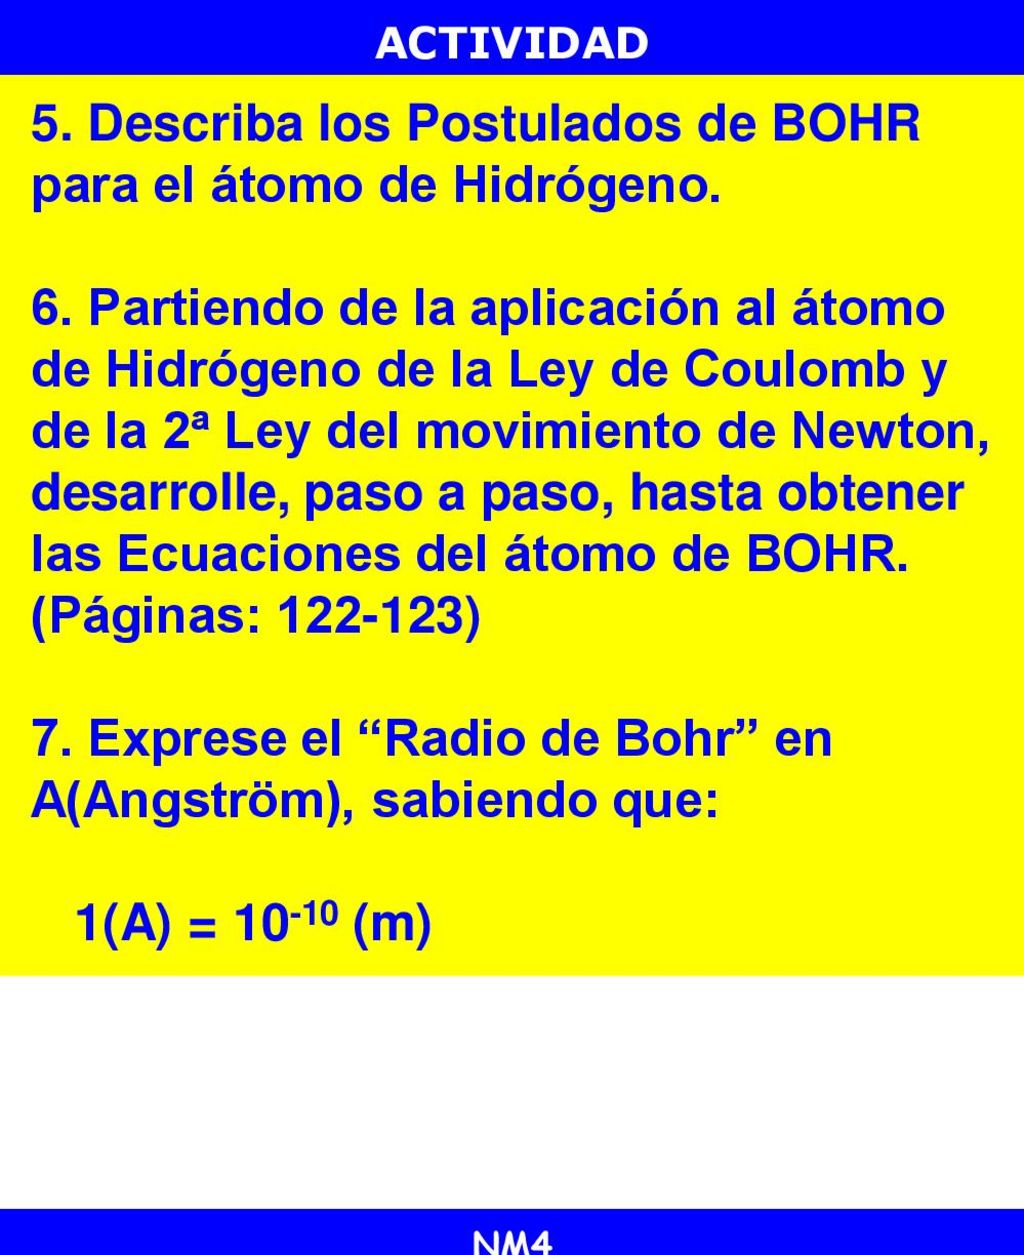 5. Describa los Postulados de BOHR para el átomo de Hidrógeno.